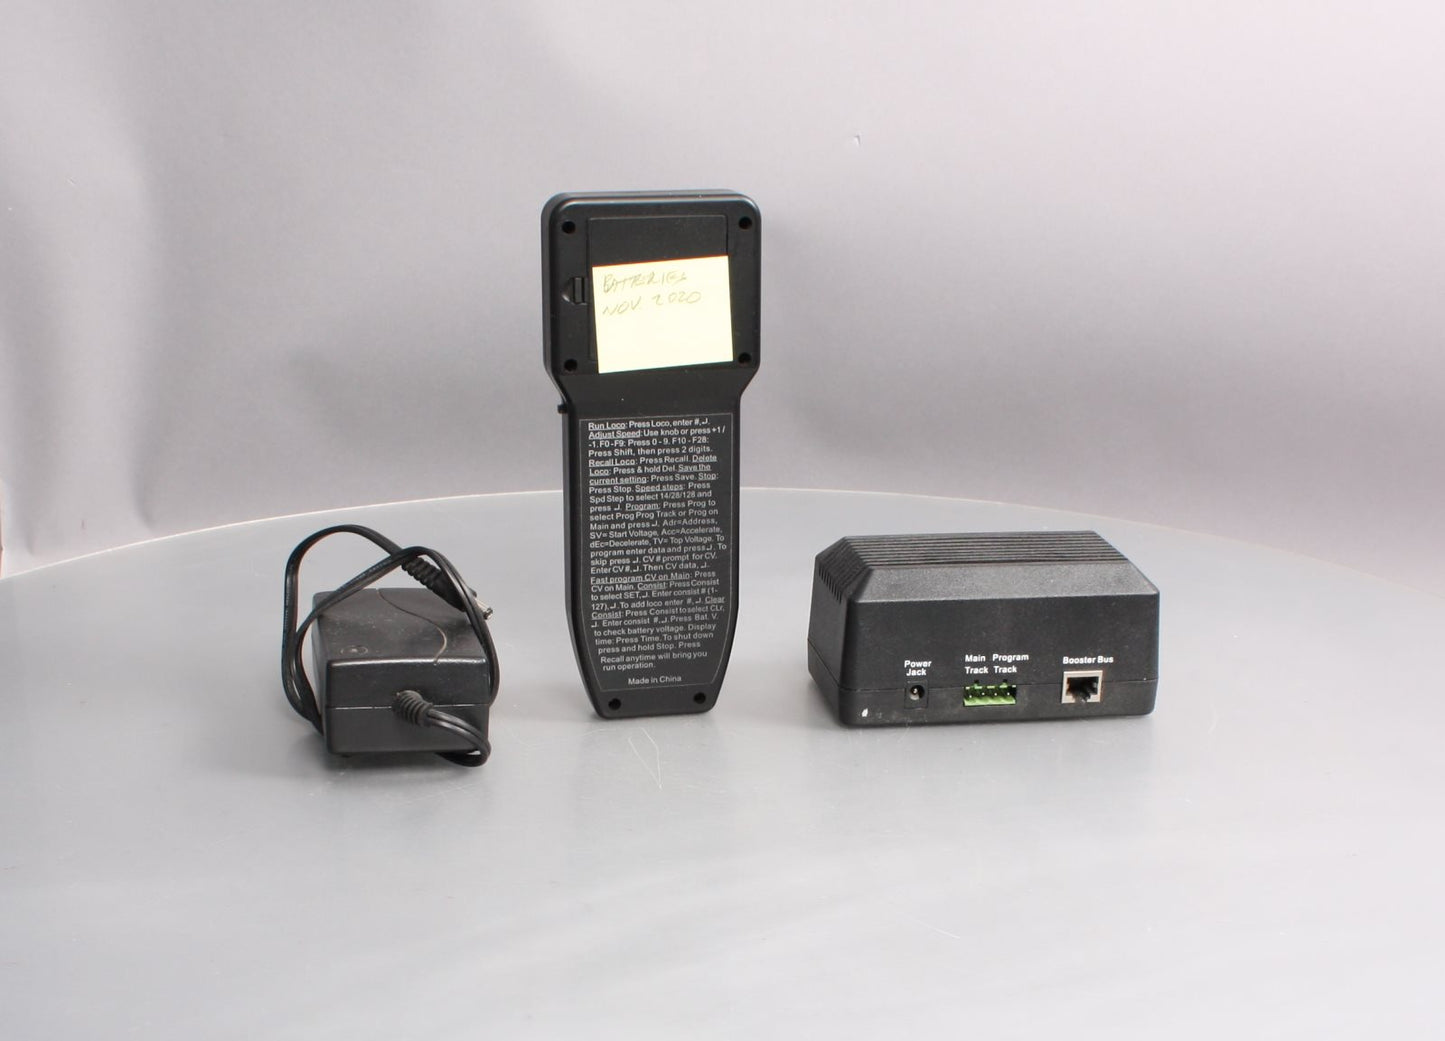 MRC 1410 Prodigy Wireless DCC System